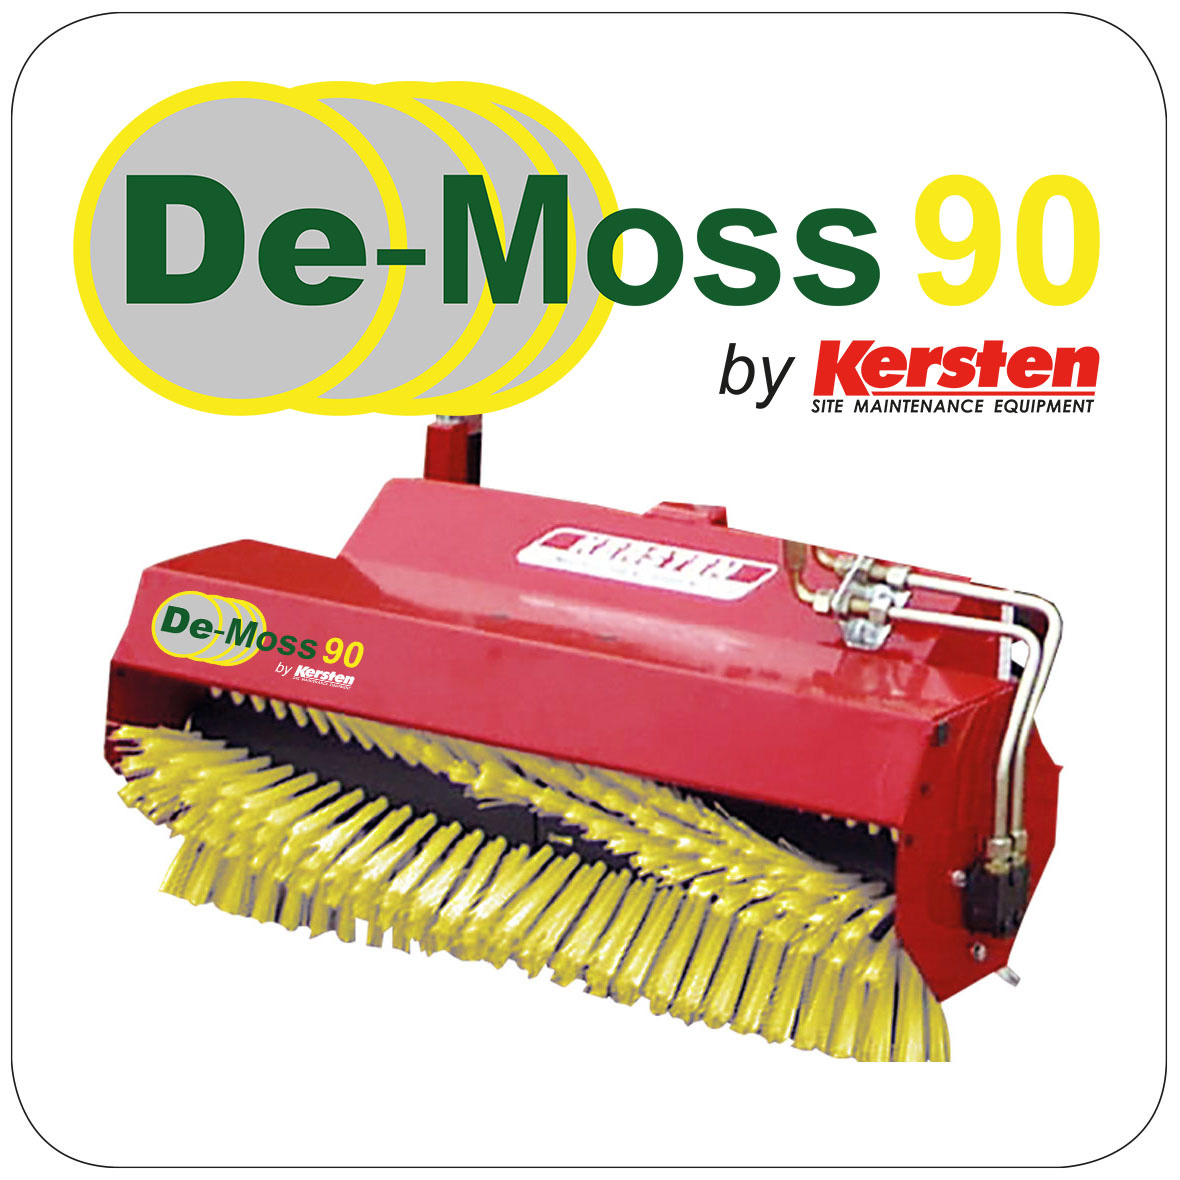 Kersten Launch De-Moss 90 Sweeper for K2100 - Cover Image